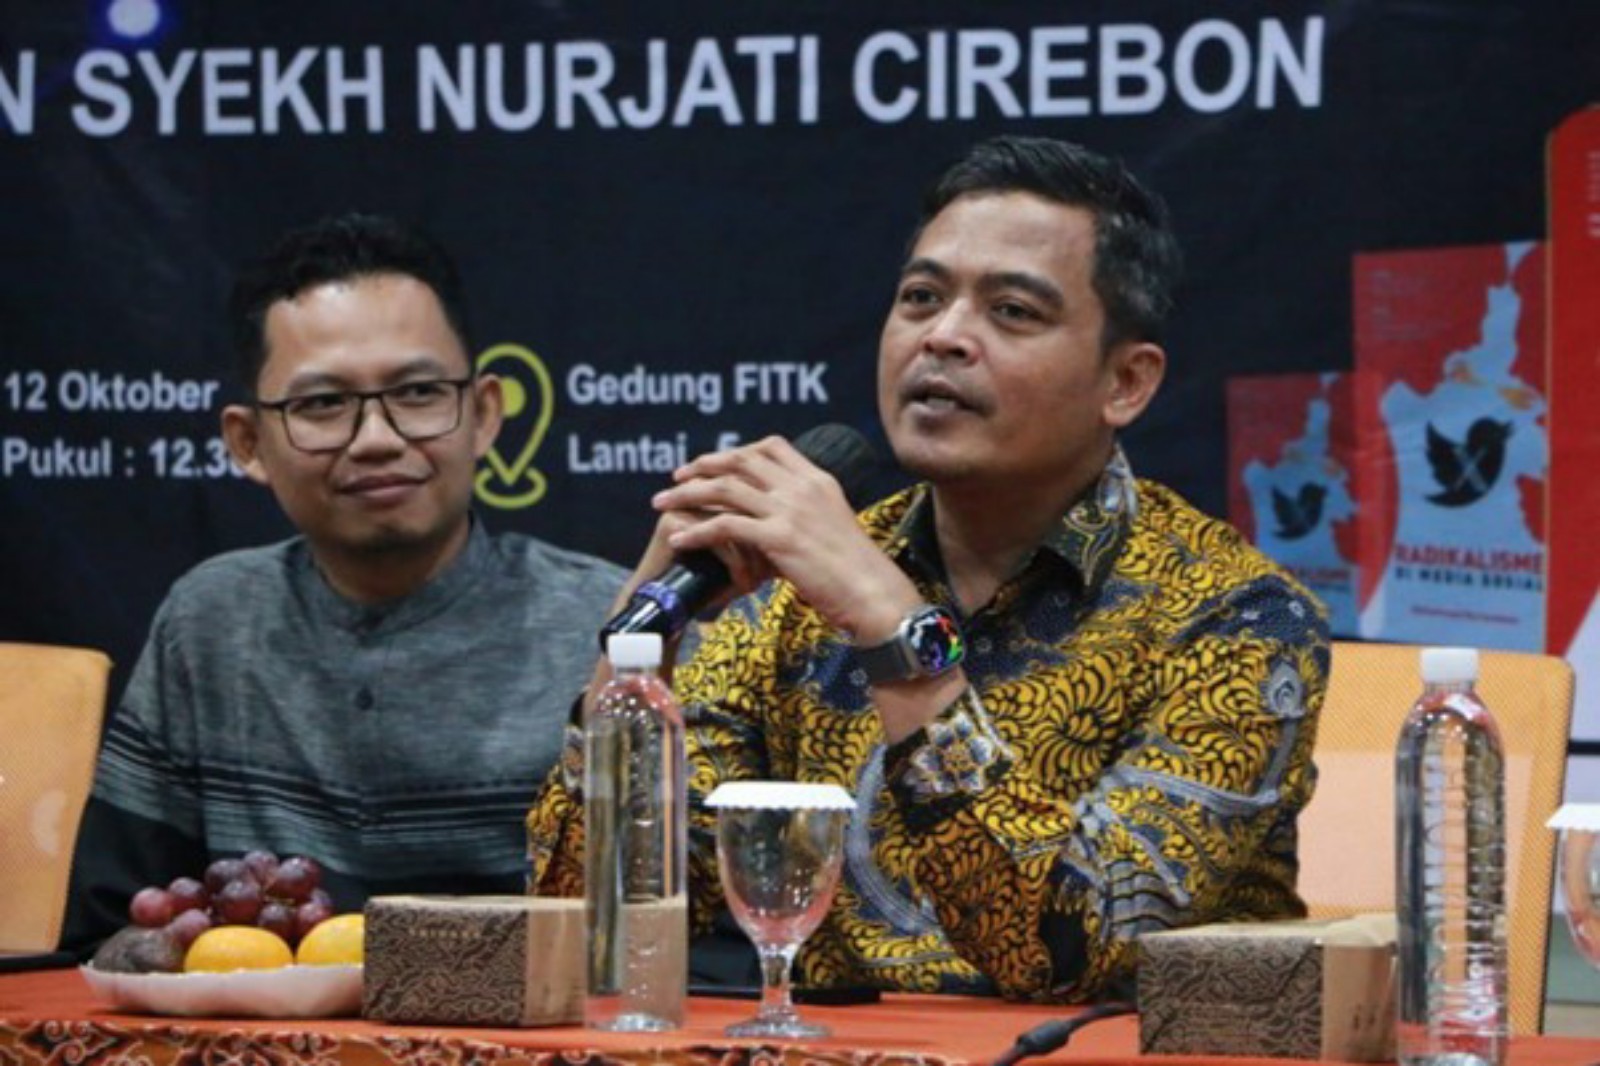 FUA IAIN Cirebon Gelar Bedah Buku Radikalisme di Media Sosial